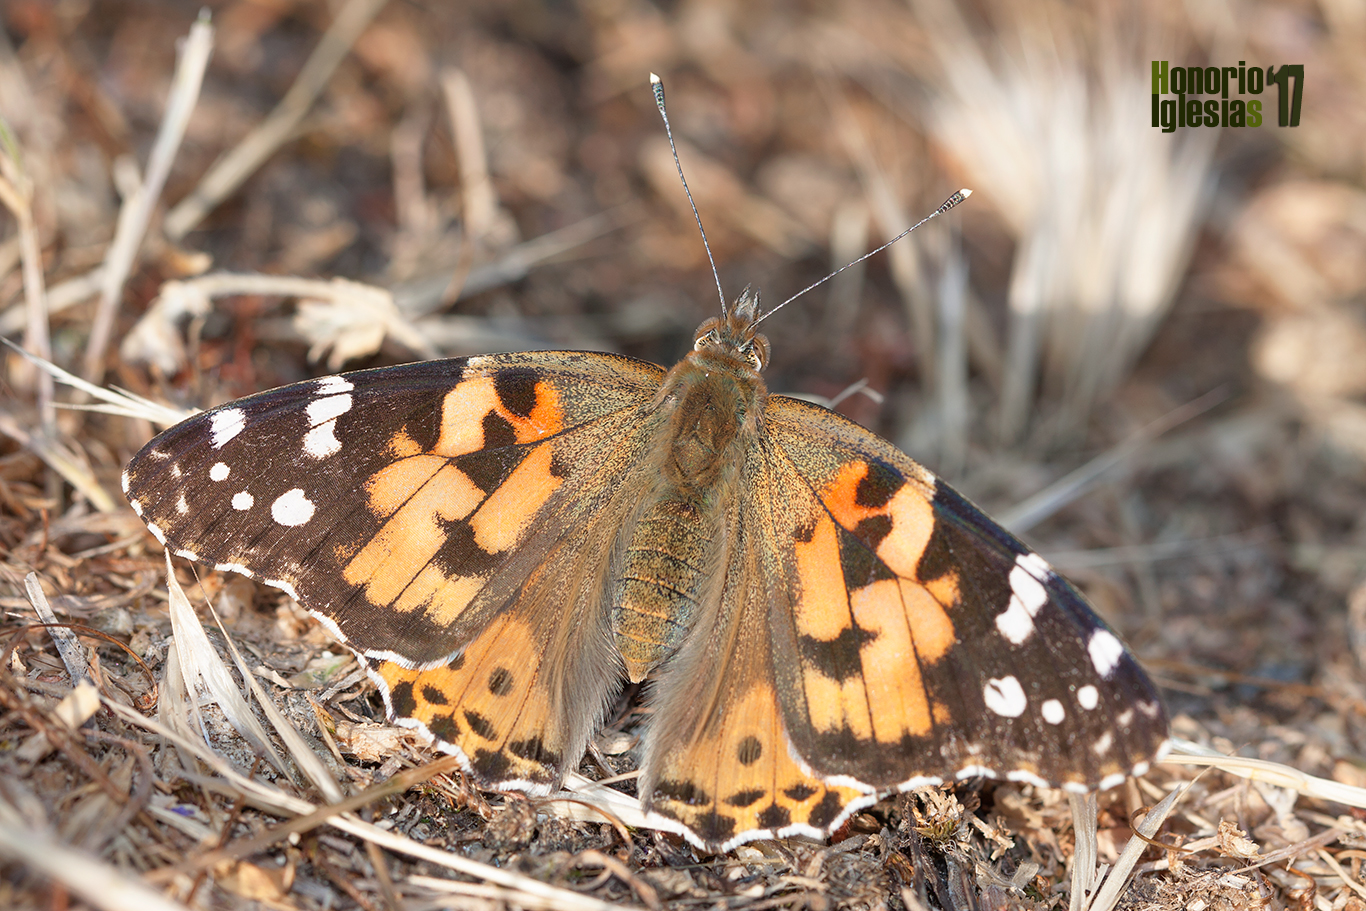 Ejemplar de mariposa cardera (Vanessa (=Cynthia) cardui), una mariposa común en los montes de Valsaín